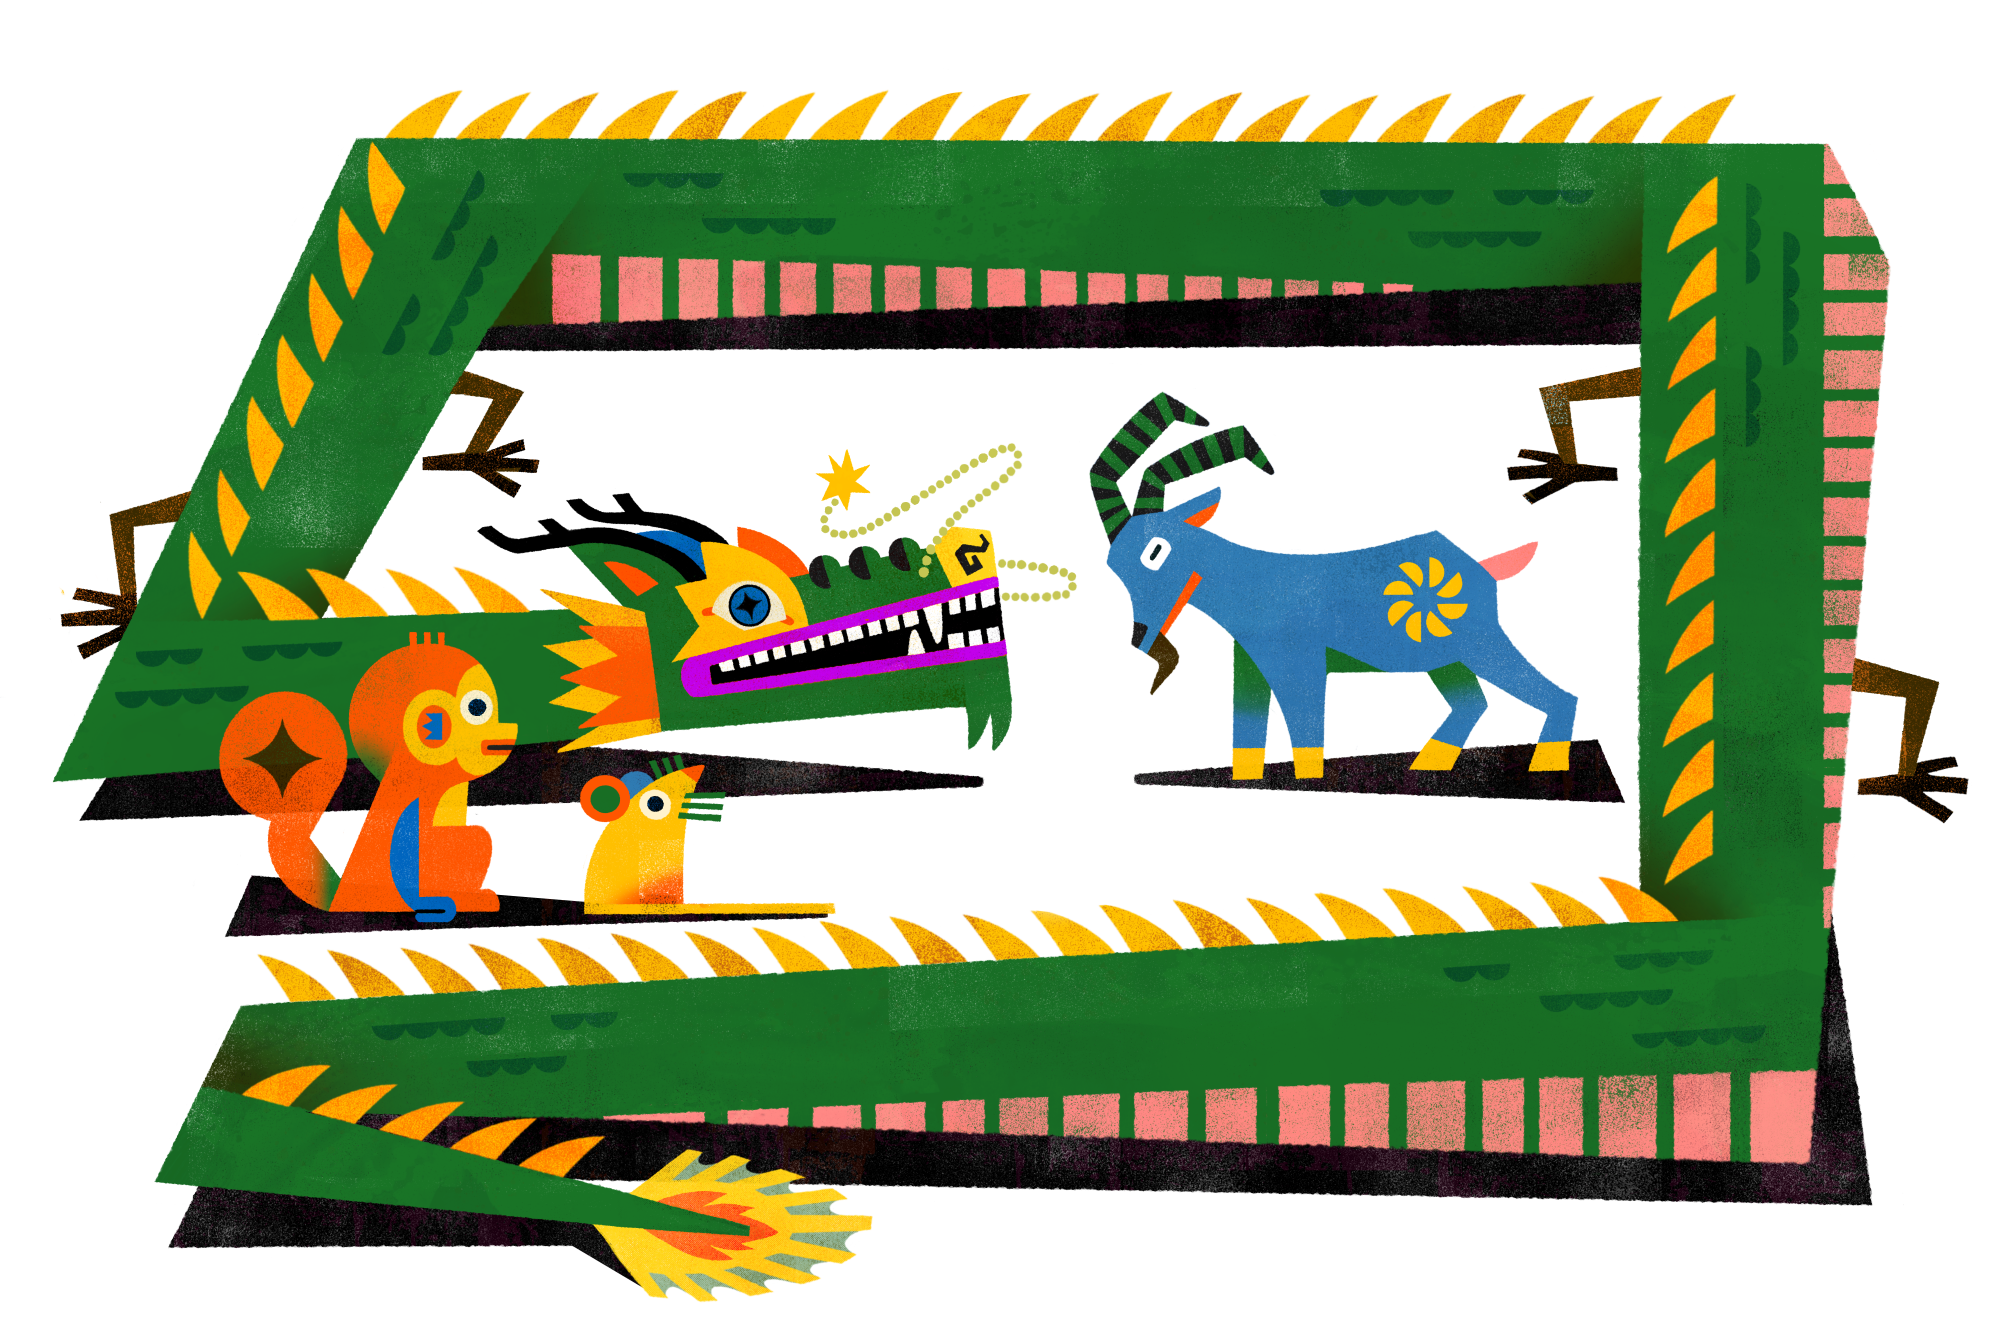 Animais ilustrados do Zodíaco: um dragão verde enfrentando uma cabra enquanto um macaco e um rato observam nas proximidades